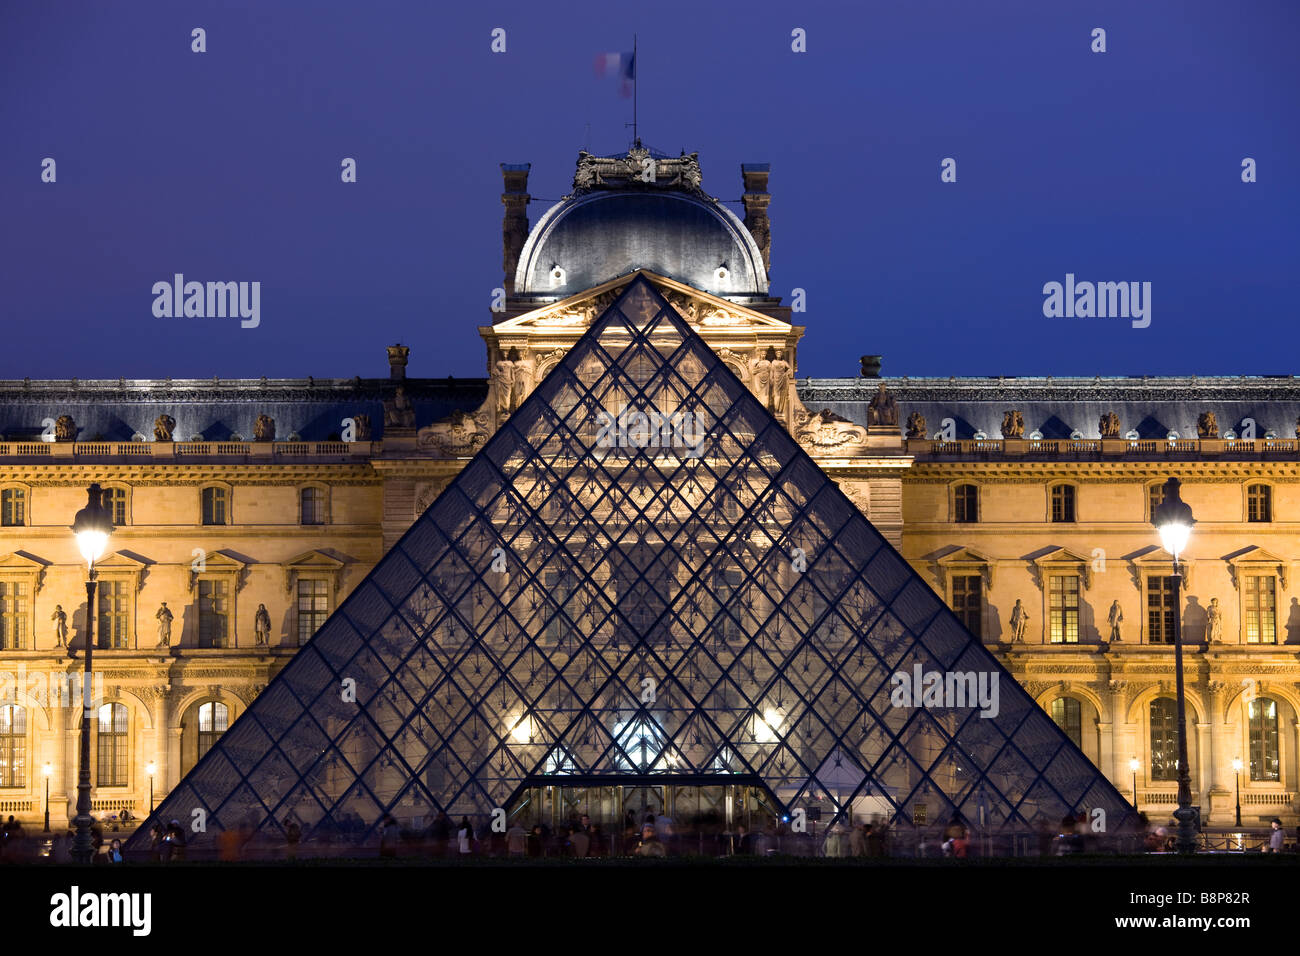 Le Musée du Louvre, Pyramide de verre lumineux Paris France entrée Banque D'Images